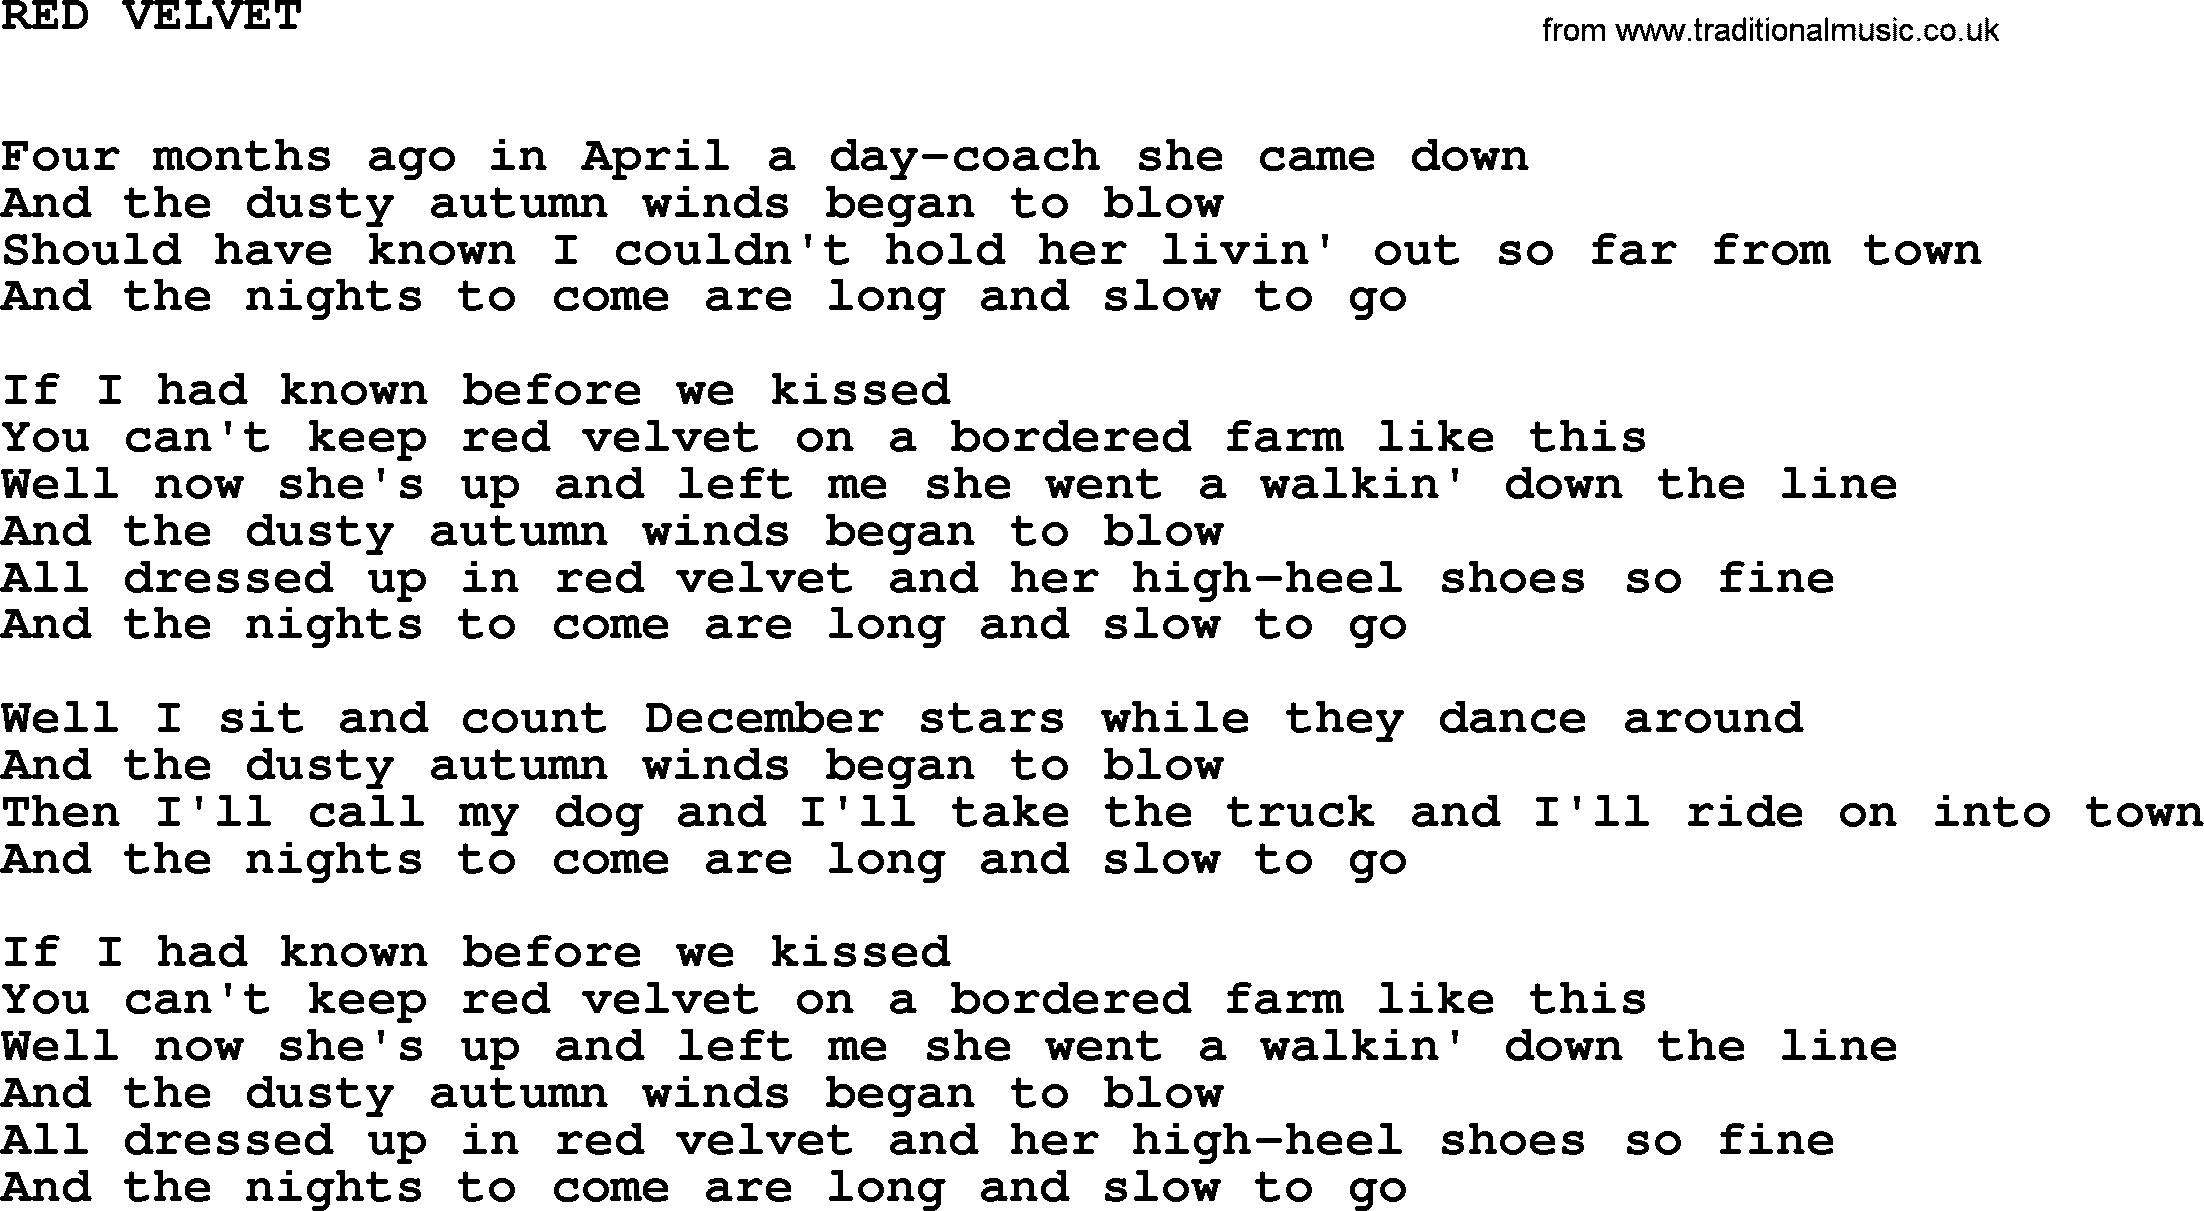 Johnny Cash song Red Velvet.txt lyrics